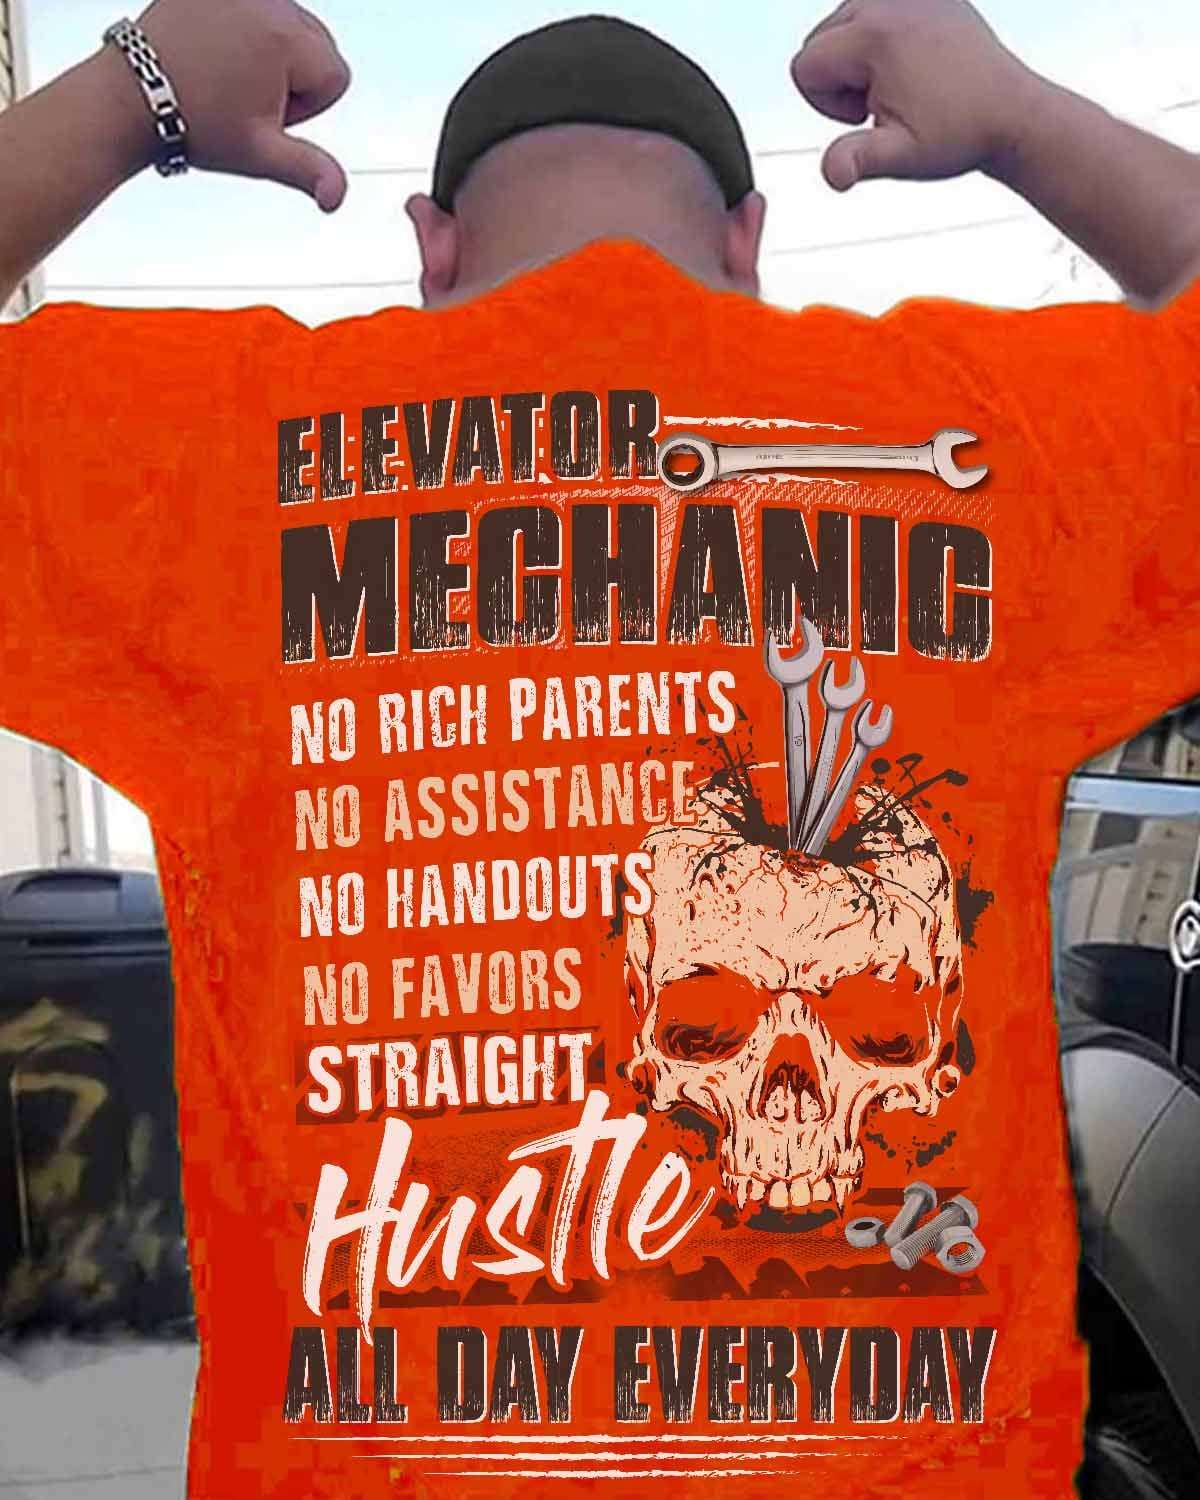 Elevator Mechanic - No rich parents, no assistance, no handouts, no favors